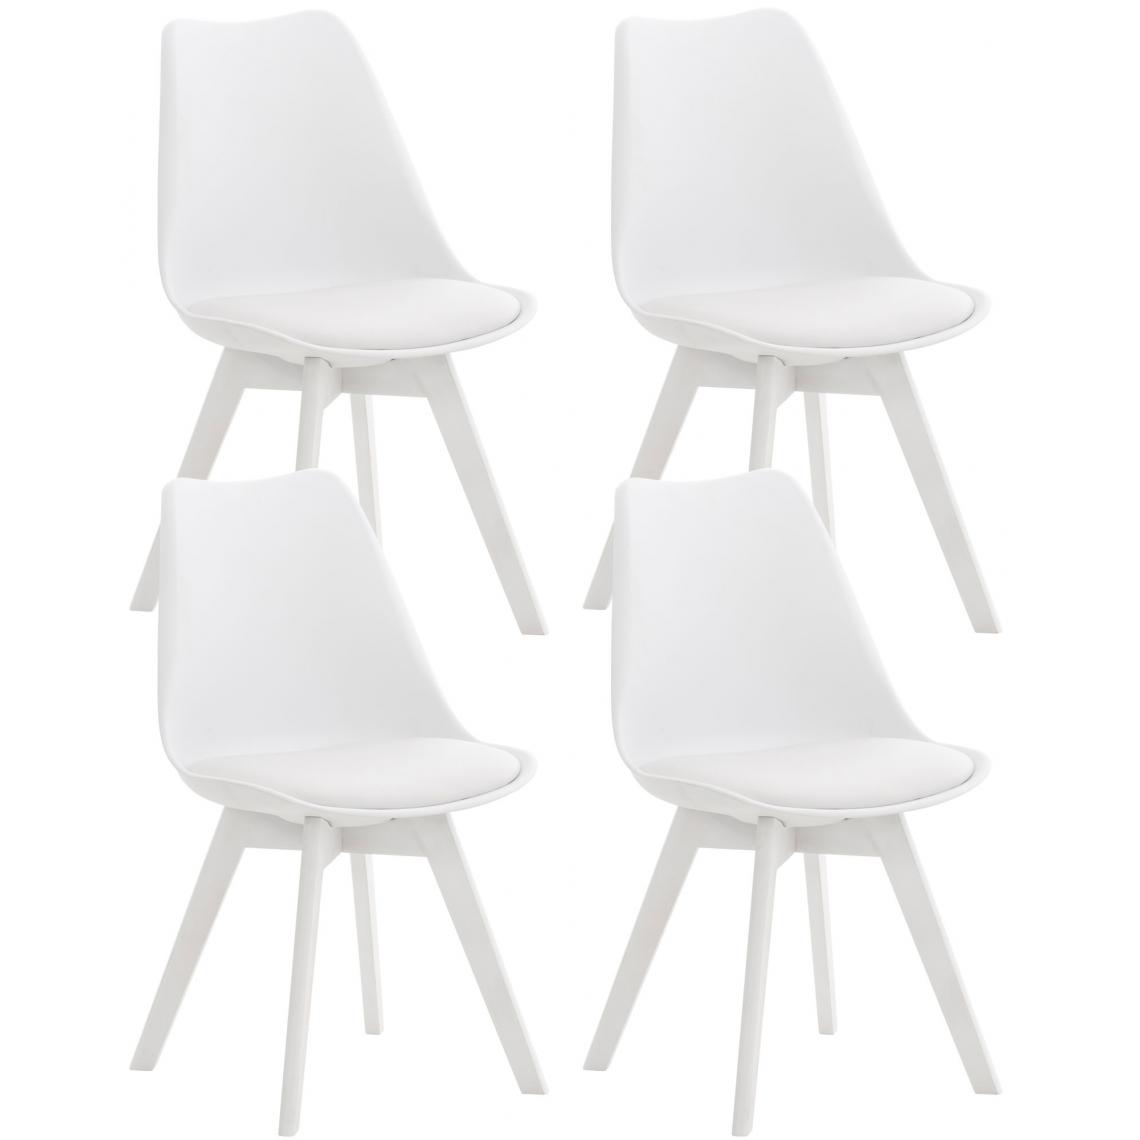 Icaverne - Distingué Lot de 4 chaises en plastique edition Oulan-Bator couleur connais le blanc - Tabourets